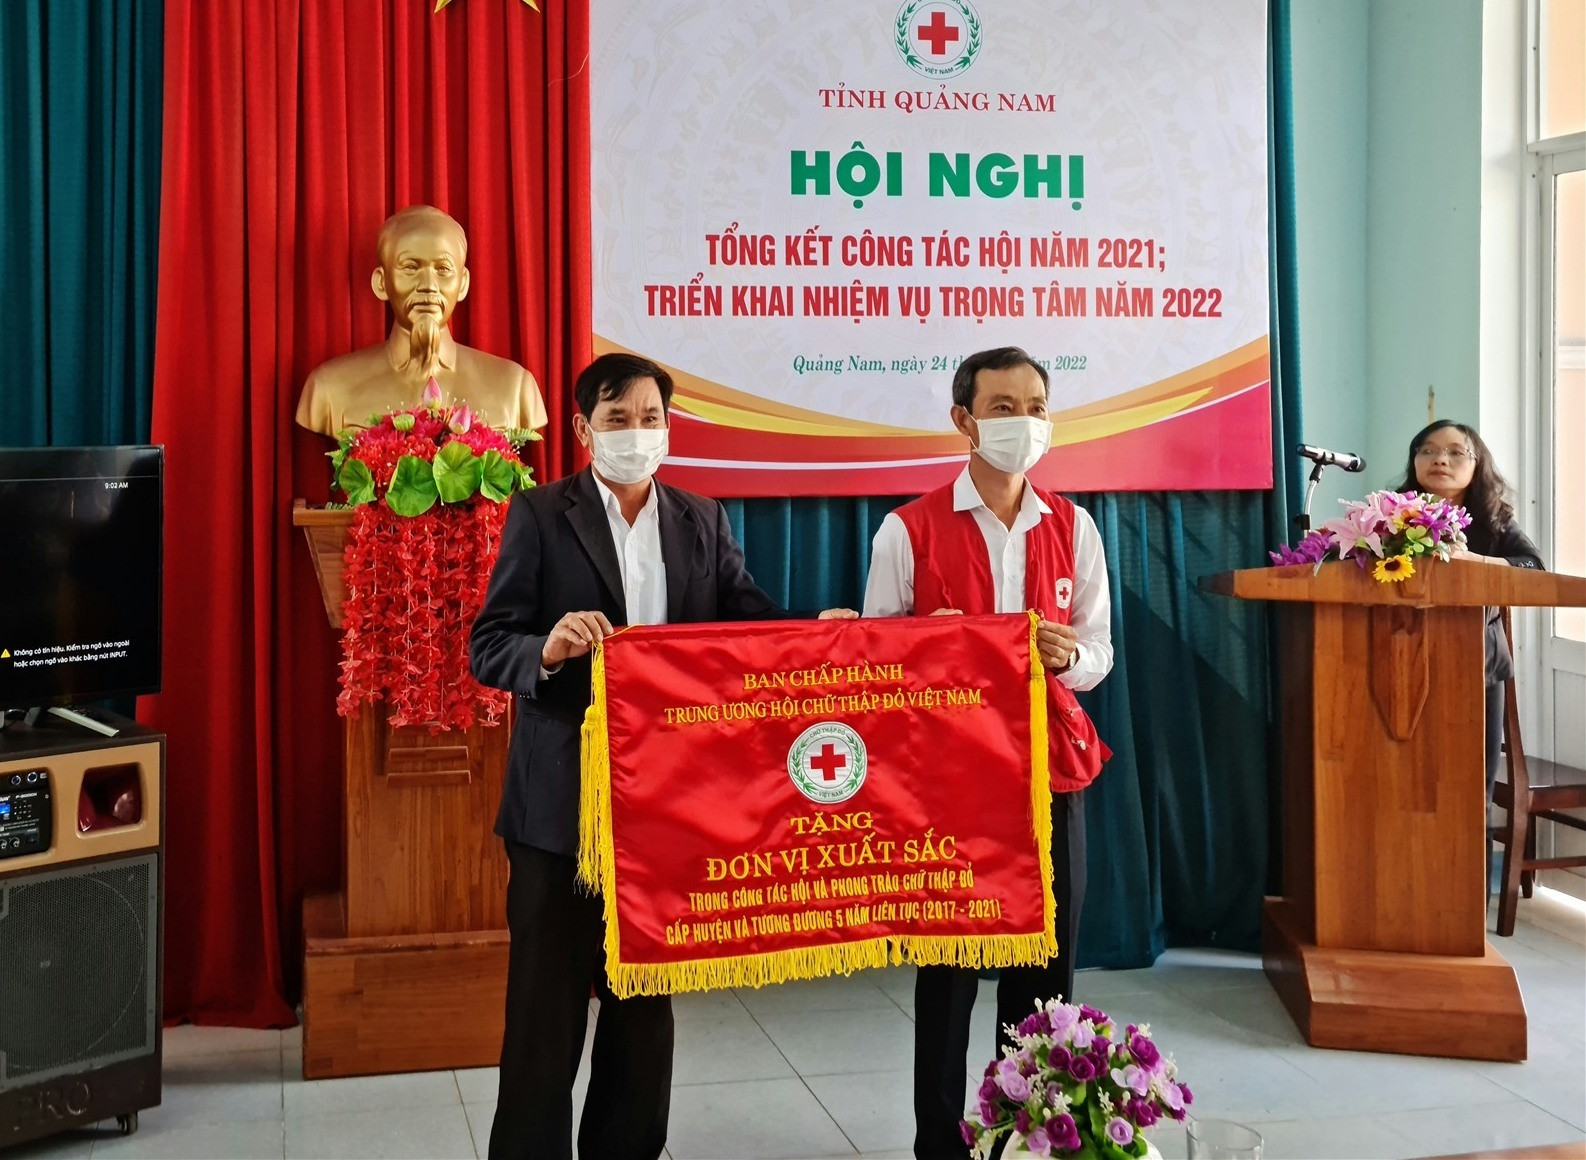 Trao tặng cờ thi đua xuất sắc của Trung ương Hội CTĐ cho Hội CTĐ huyện Núi Thành. Ảnh: H.LIÊN